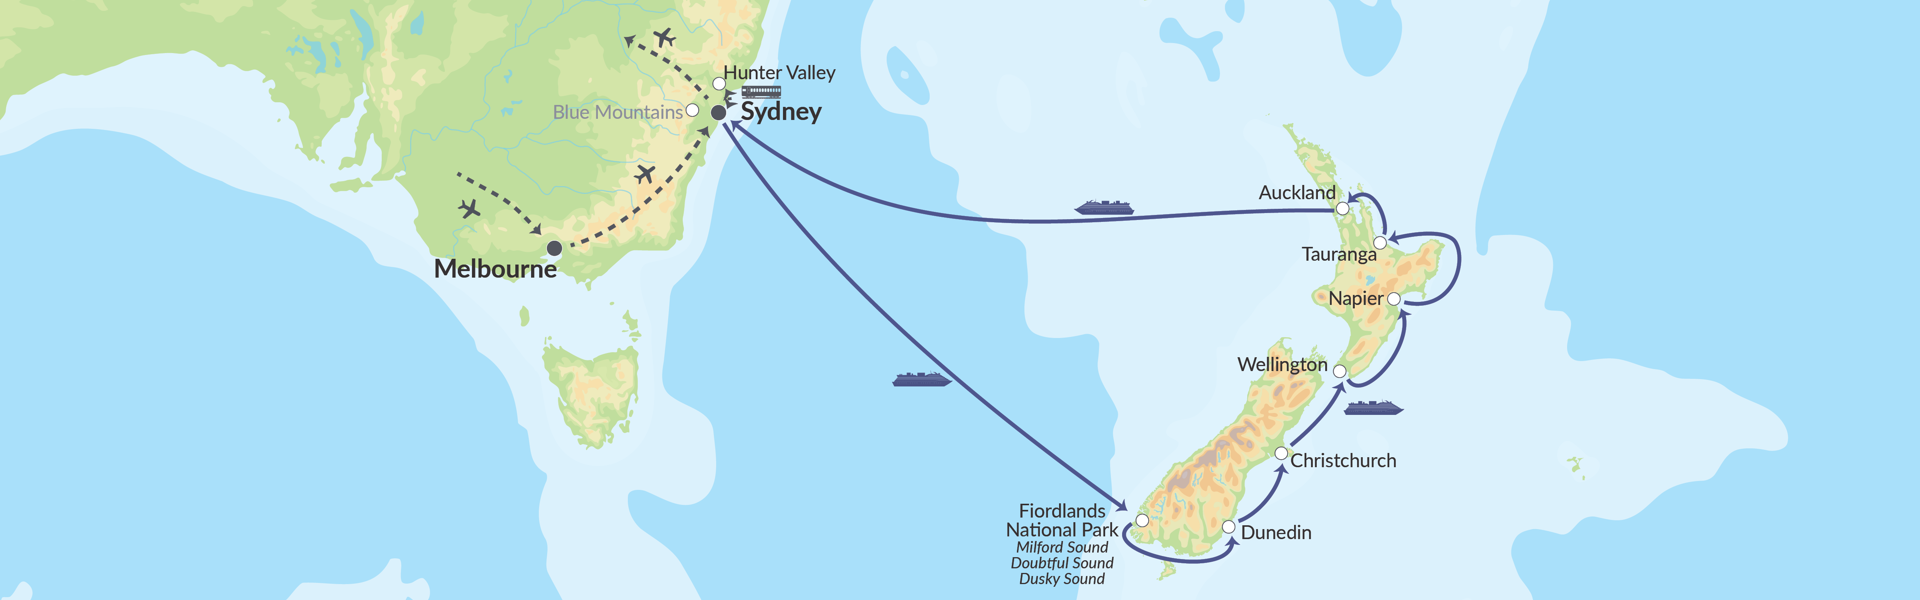 90163 Australien & Krydstogt Til New Zealand